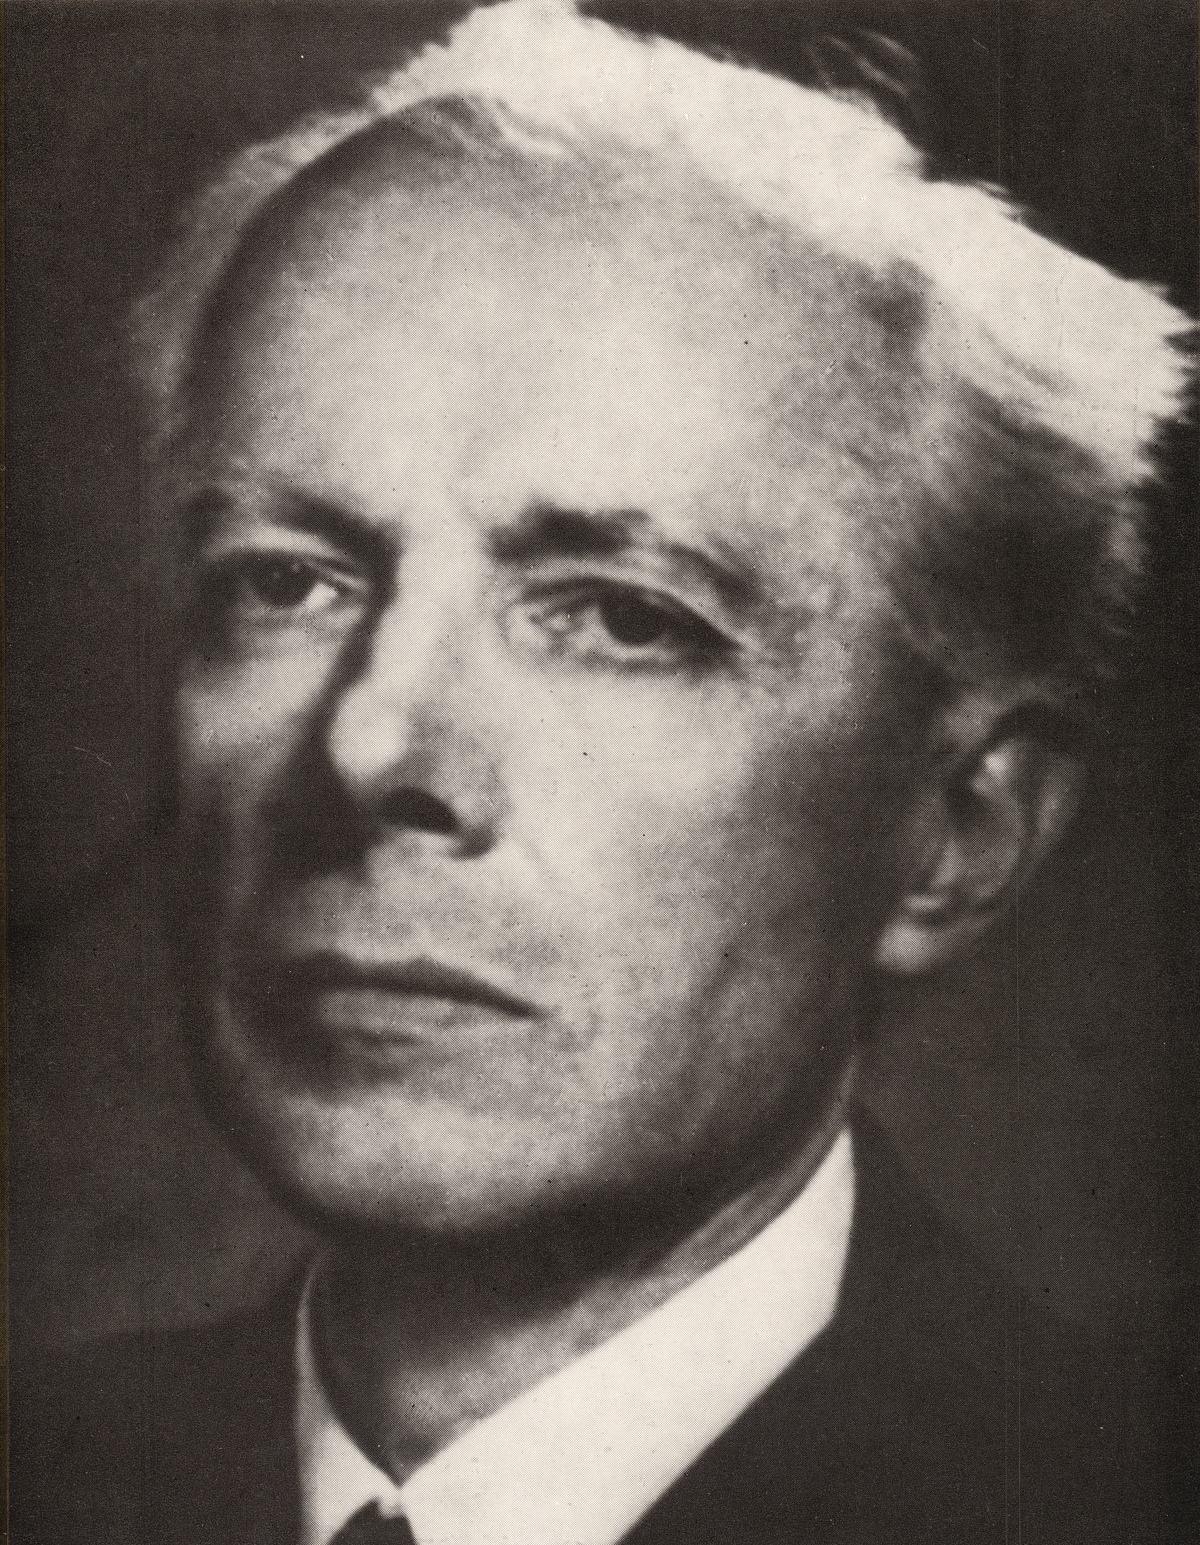 Béla BARTÓK en 1939, un portrait fait par Marian Reismann, publié - entre autres - en couverture de l'album Hungaroton LPX 11437